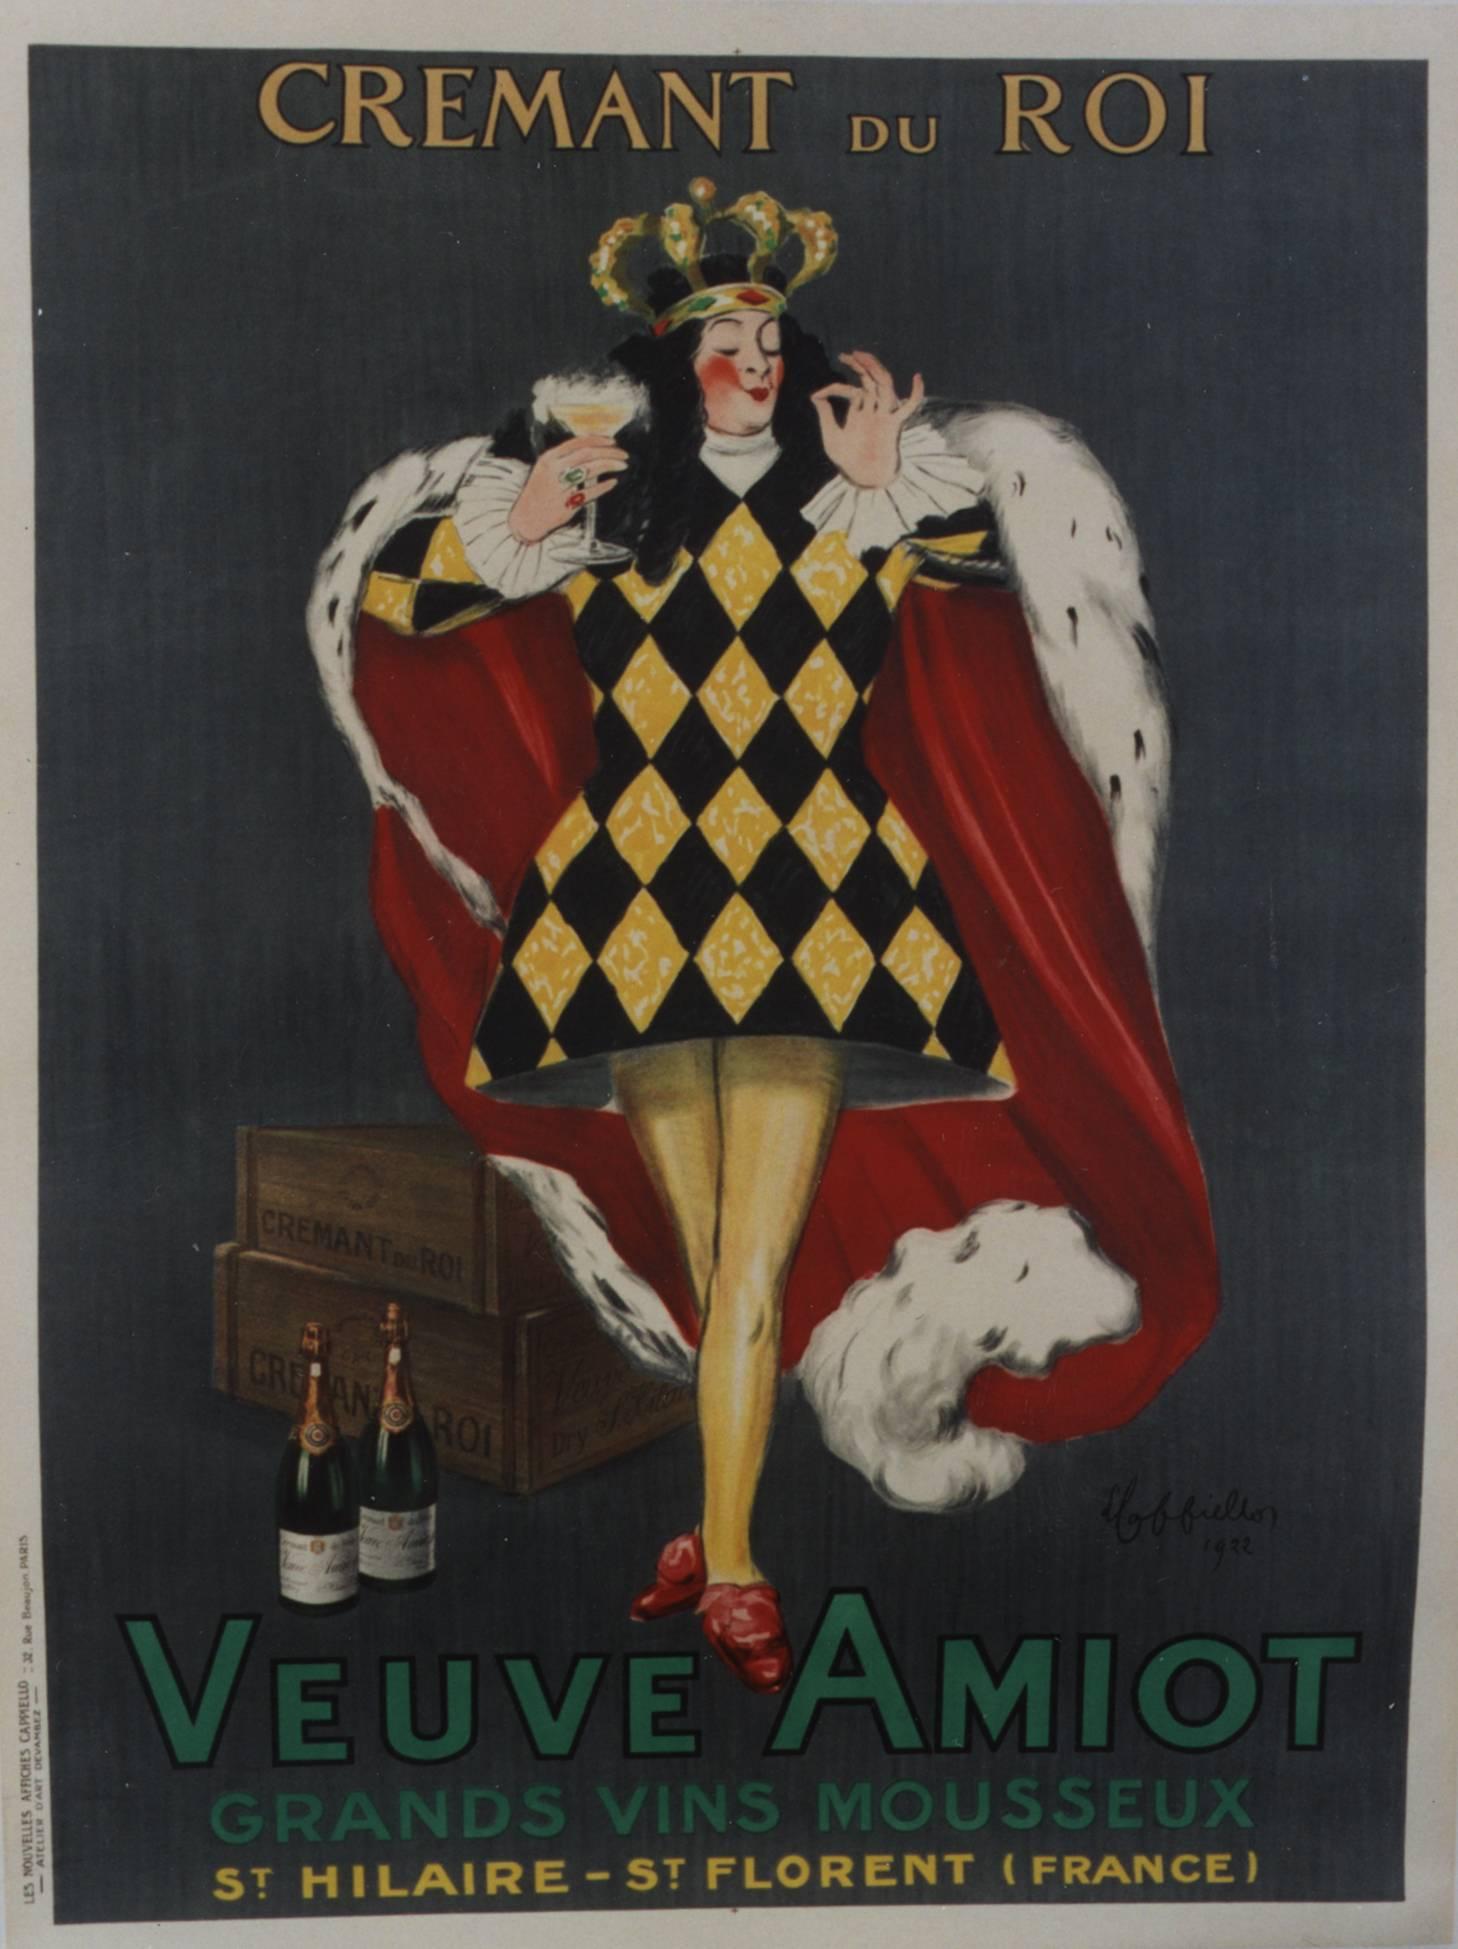 Leonetto Cappiello Figurative Print - Cremant du Roi/Veuve Amiot, 1922. Color lithograph